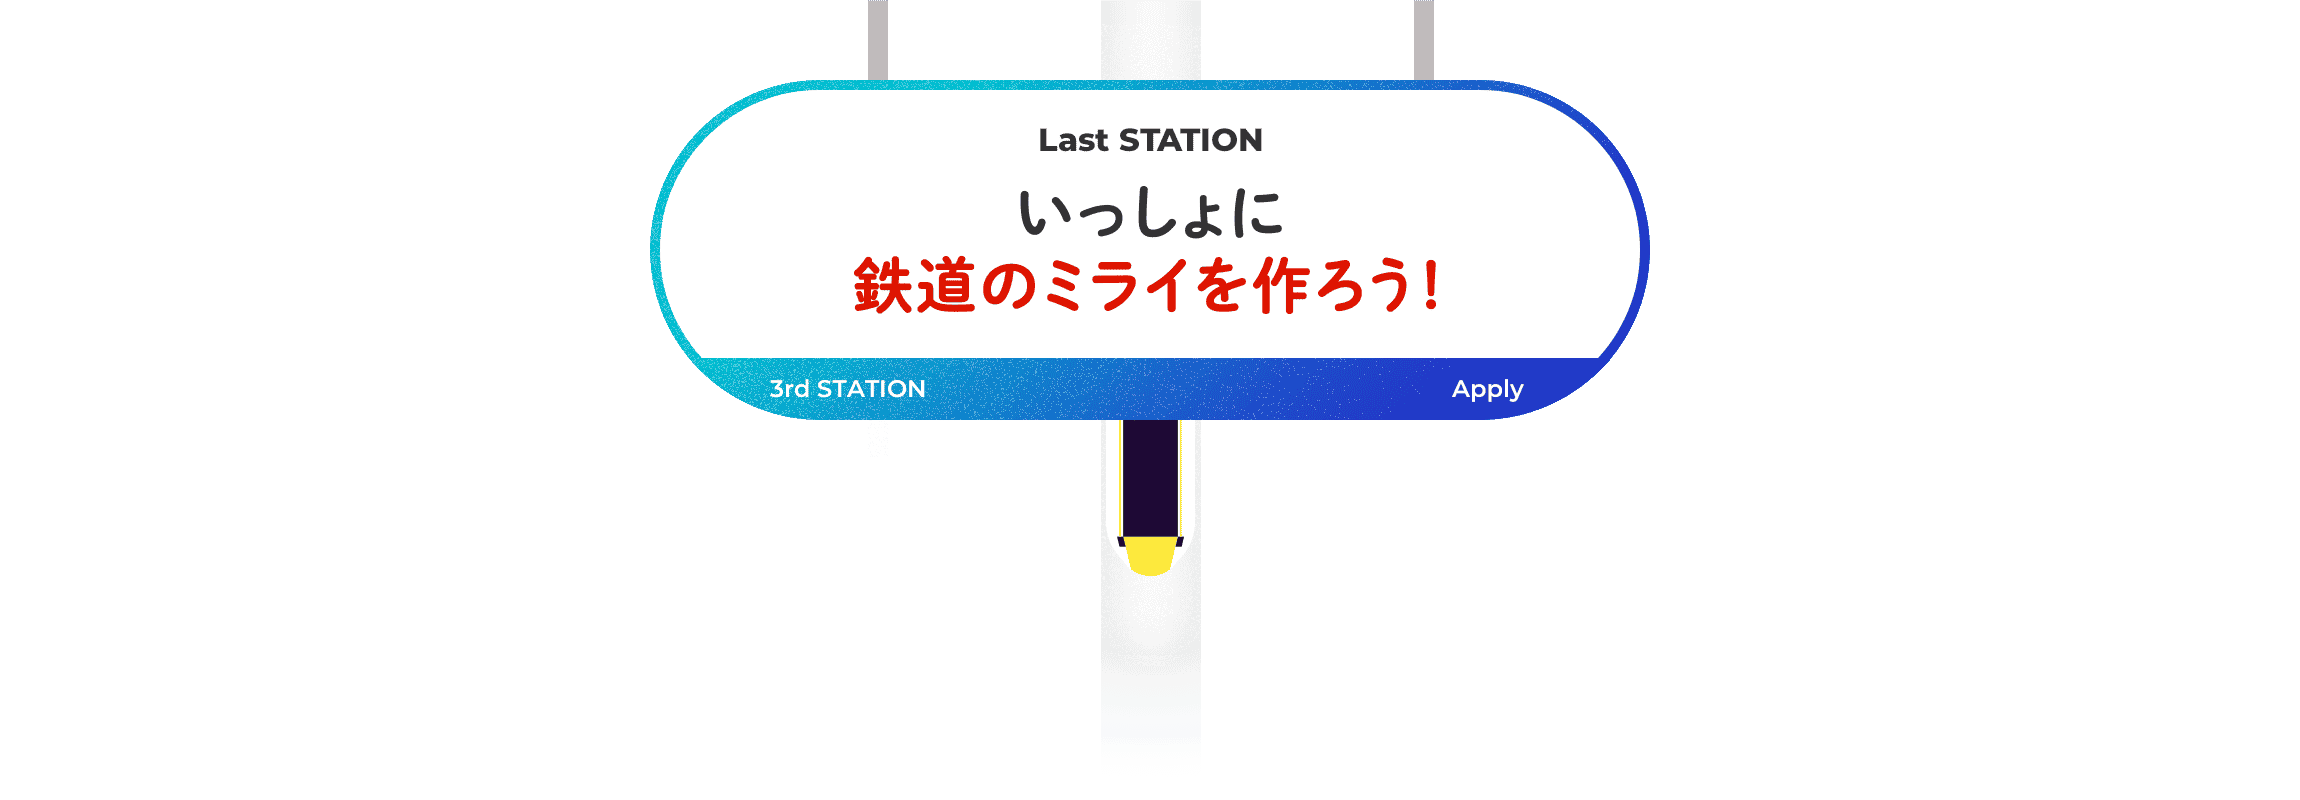 Last Station. ɓS̃~C낤I